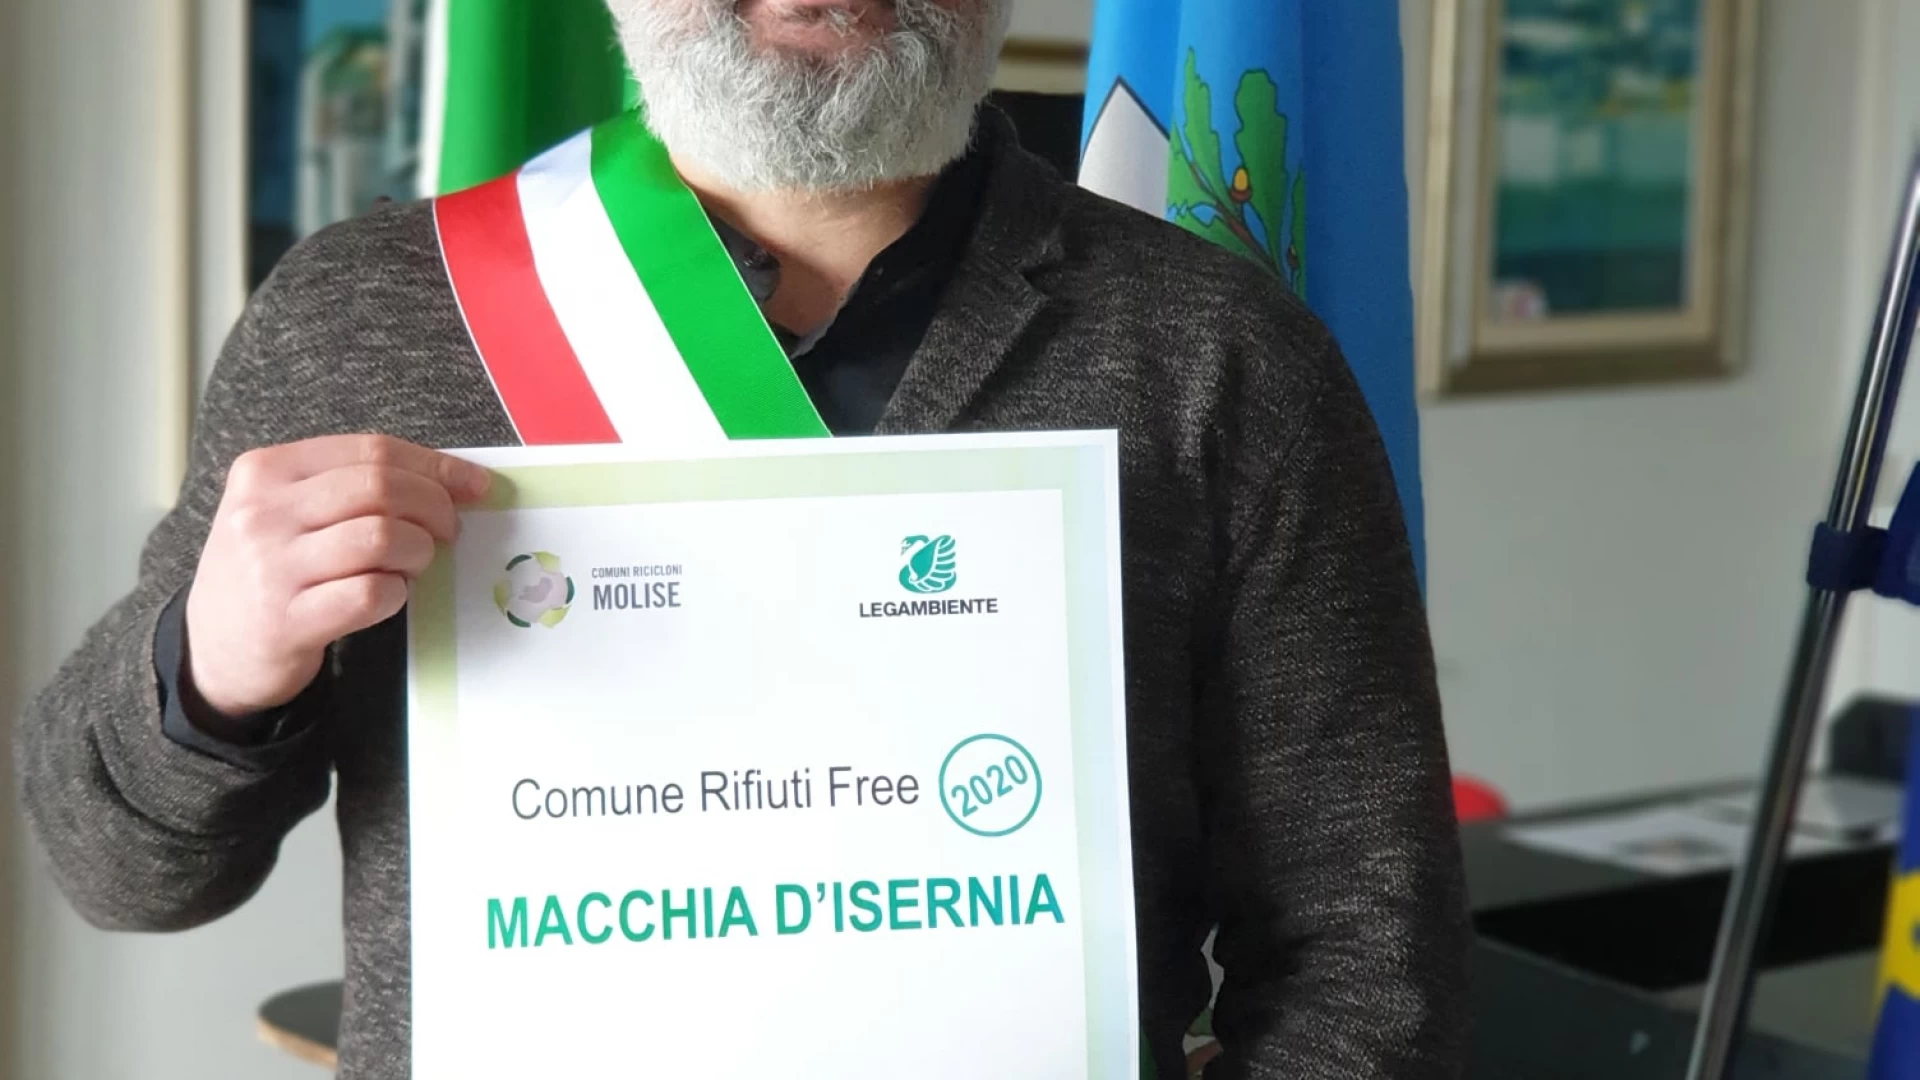 Macchia d’Isernia premiato da Legambiente. E’ un comune rifiuti free per il 2019.